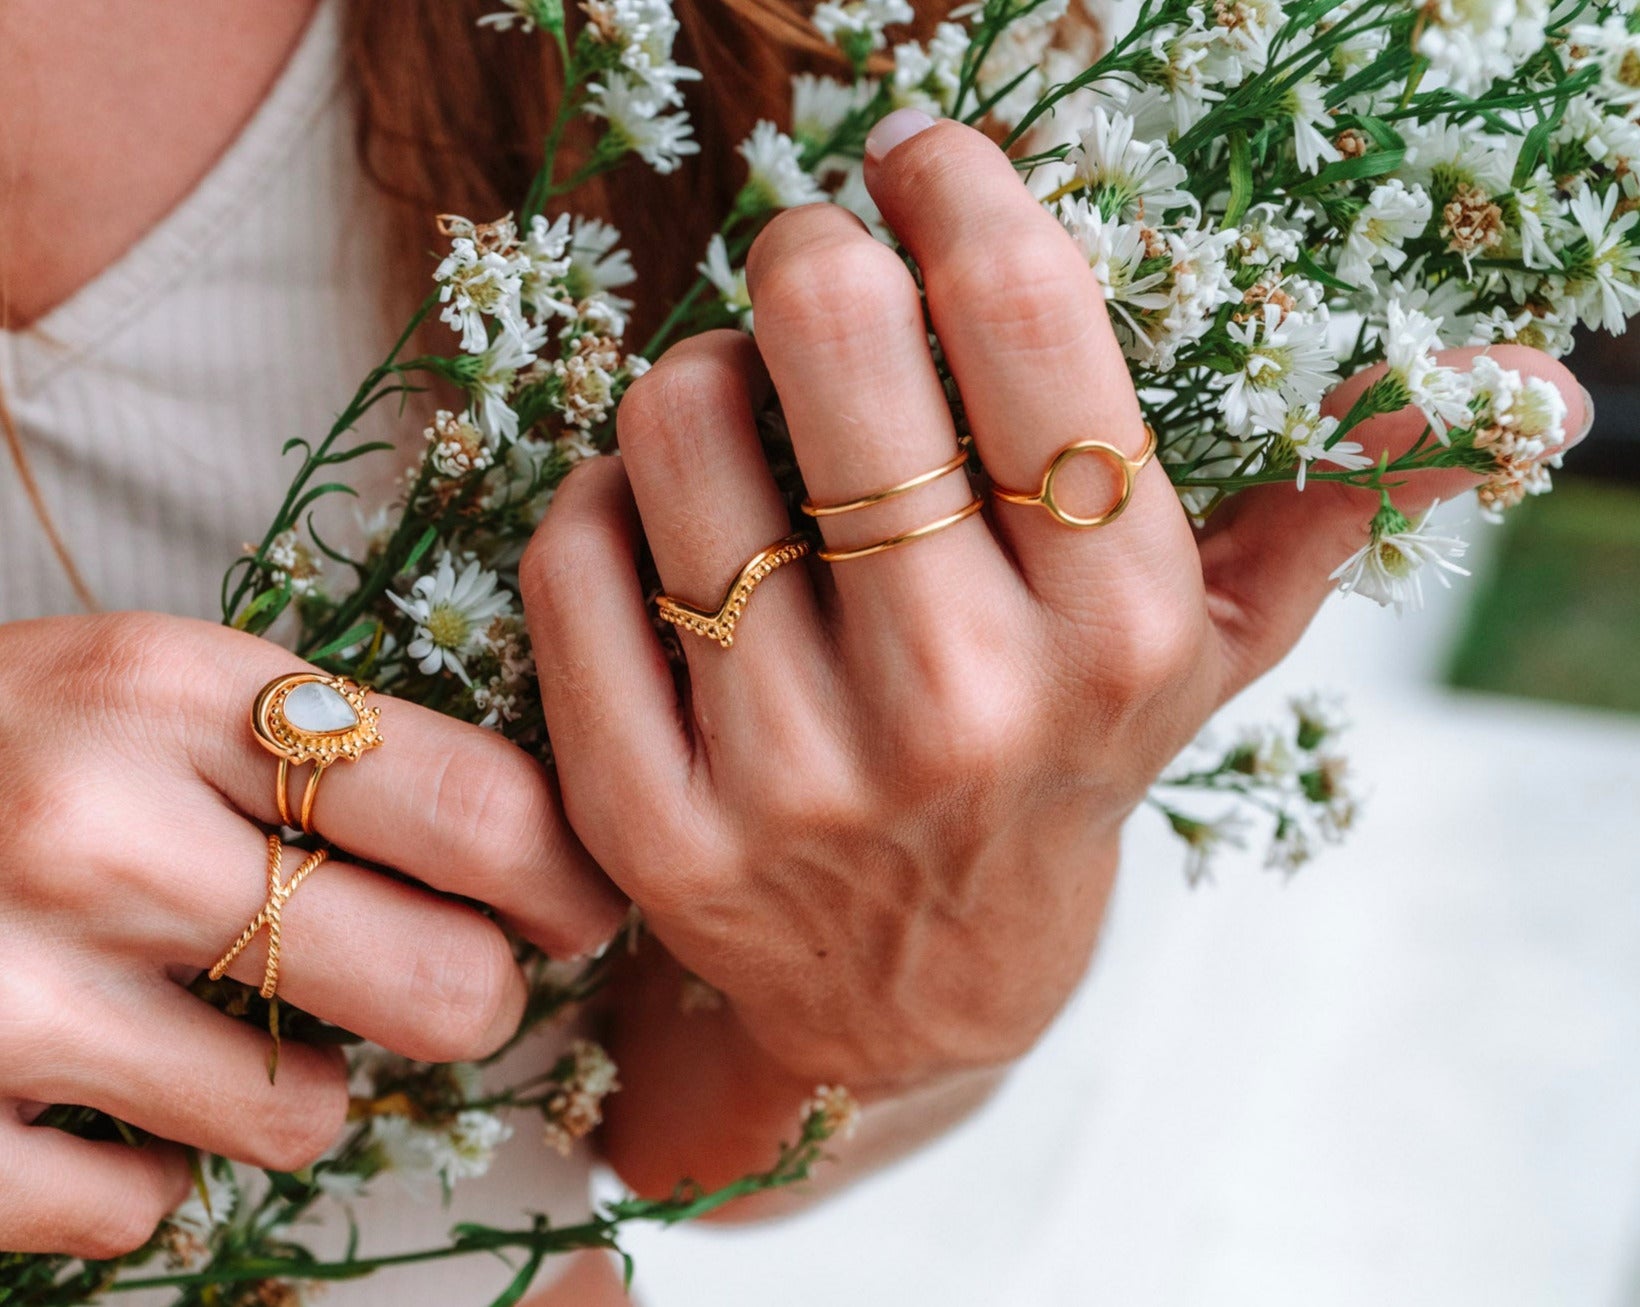 Handmade with love | VERLAN Jewellery | Fairfashion | Handgemachte Ringe im Boho Look aus Bali | Fair und nachhaltig handgefertigter Schmuck | Verstellbarer Ring | Kombi & adjustable Ring | vergoldet | Bingin ring